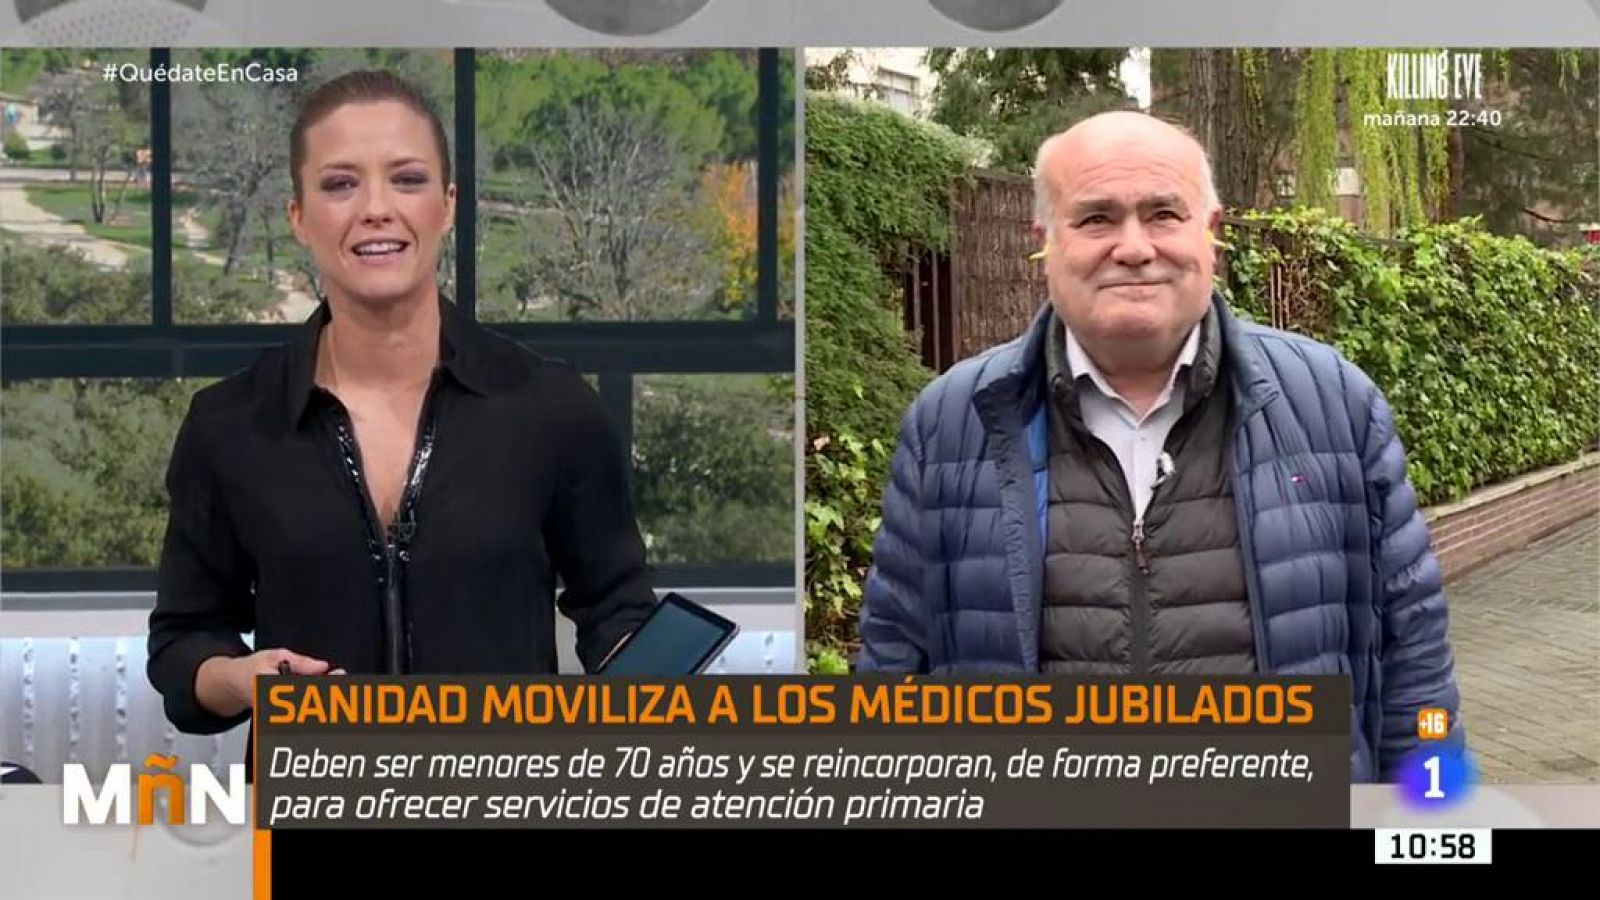 Sanidad moviliza a los médicos jubilados - RTVE.es